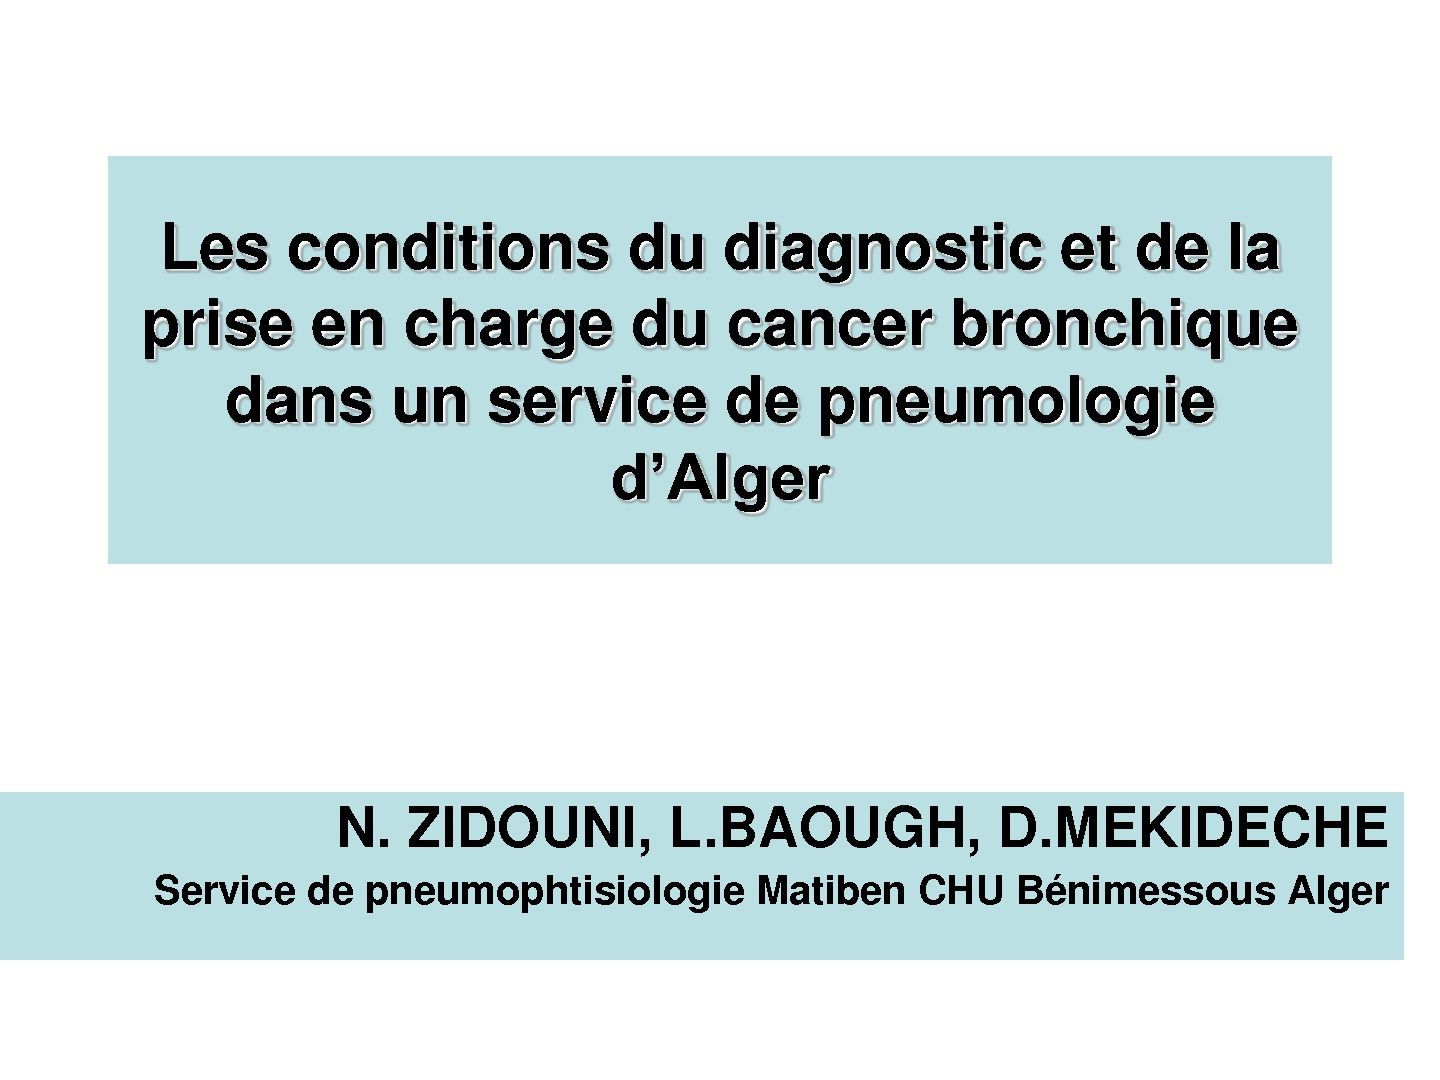 Les conditions du diagnostic et de la prise en charge du cancer bronchique dans un service de pneumologie d’Alger. N. Zidouni